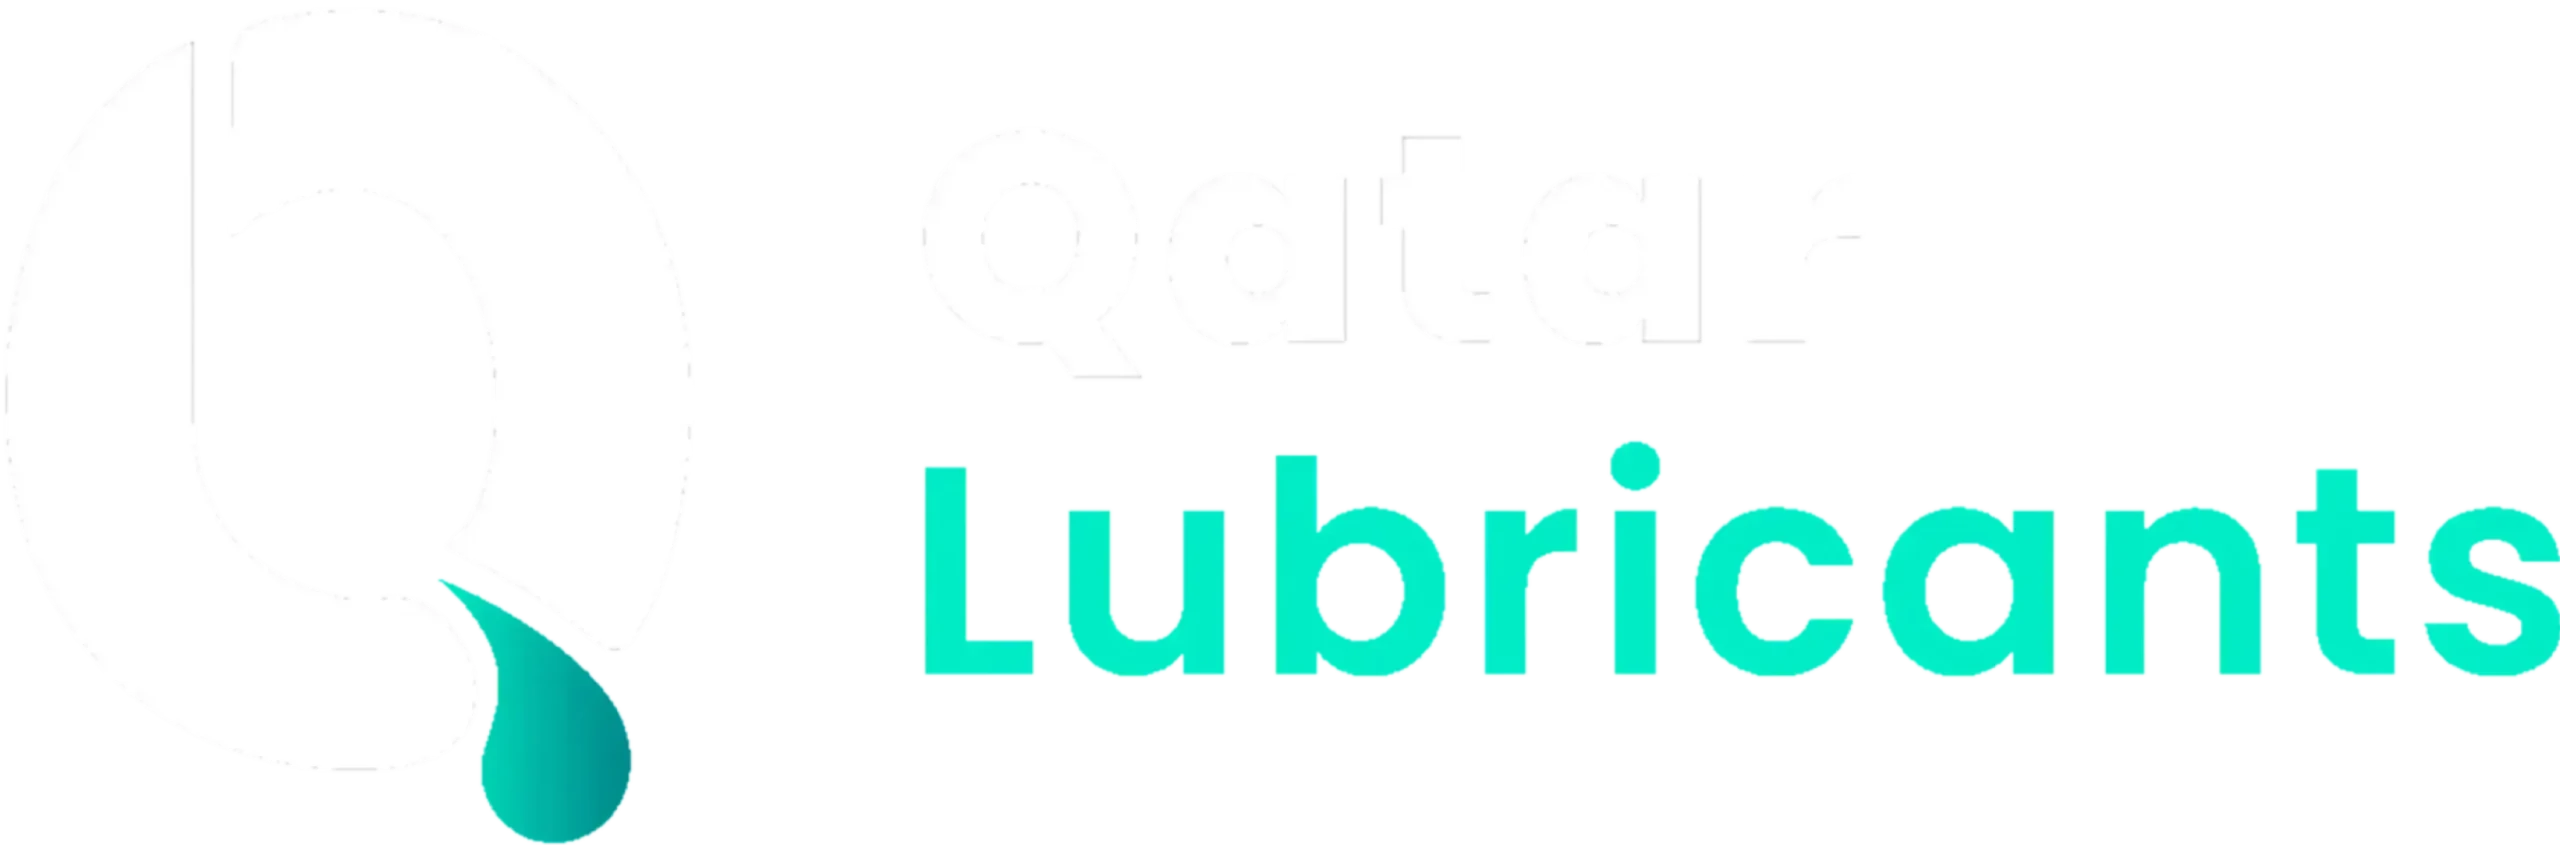 Qatar Lubricants Logo